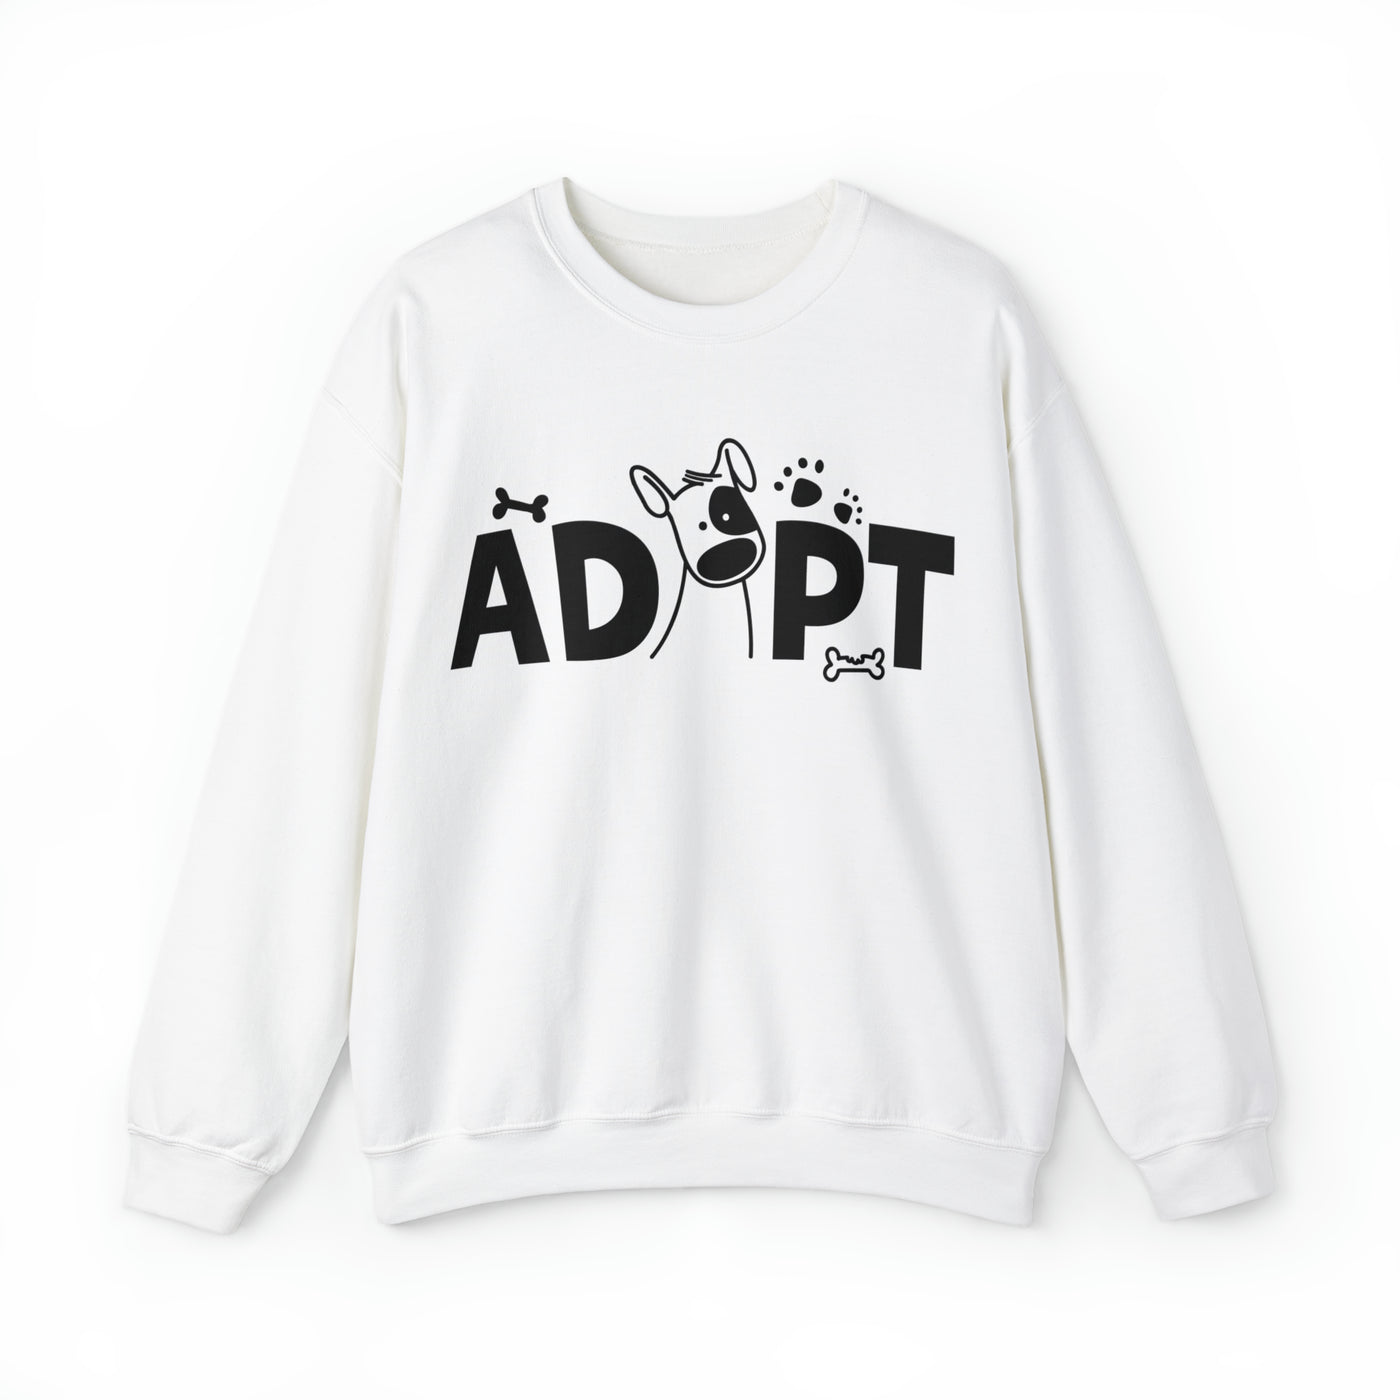 Adopt  Sweatshirt (Assorted Colors)